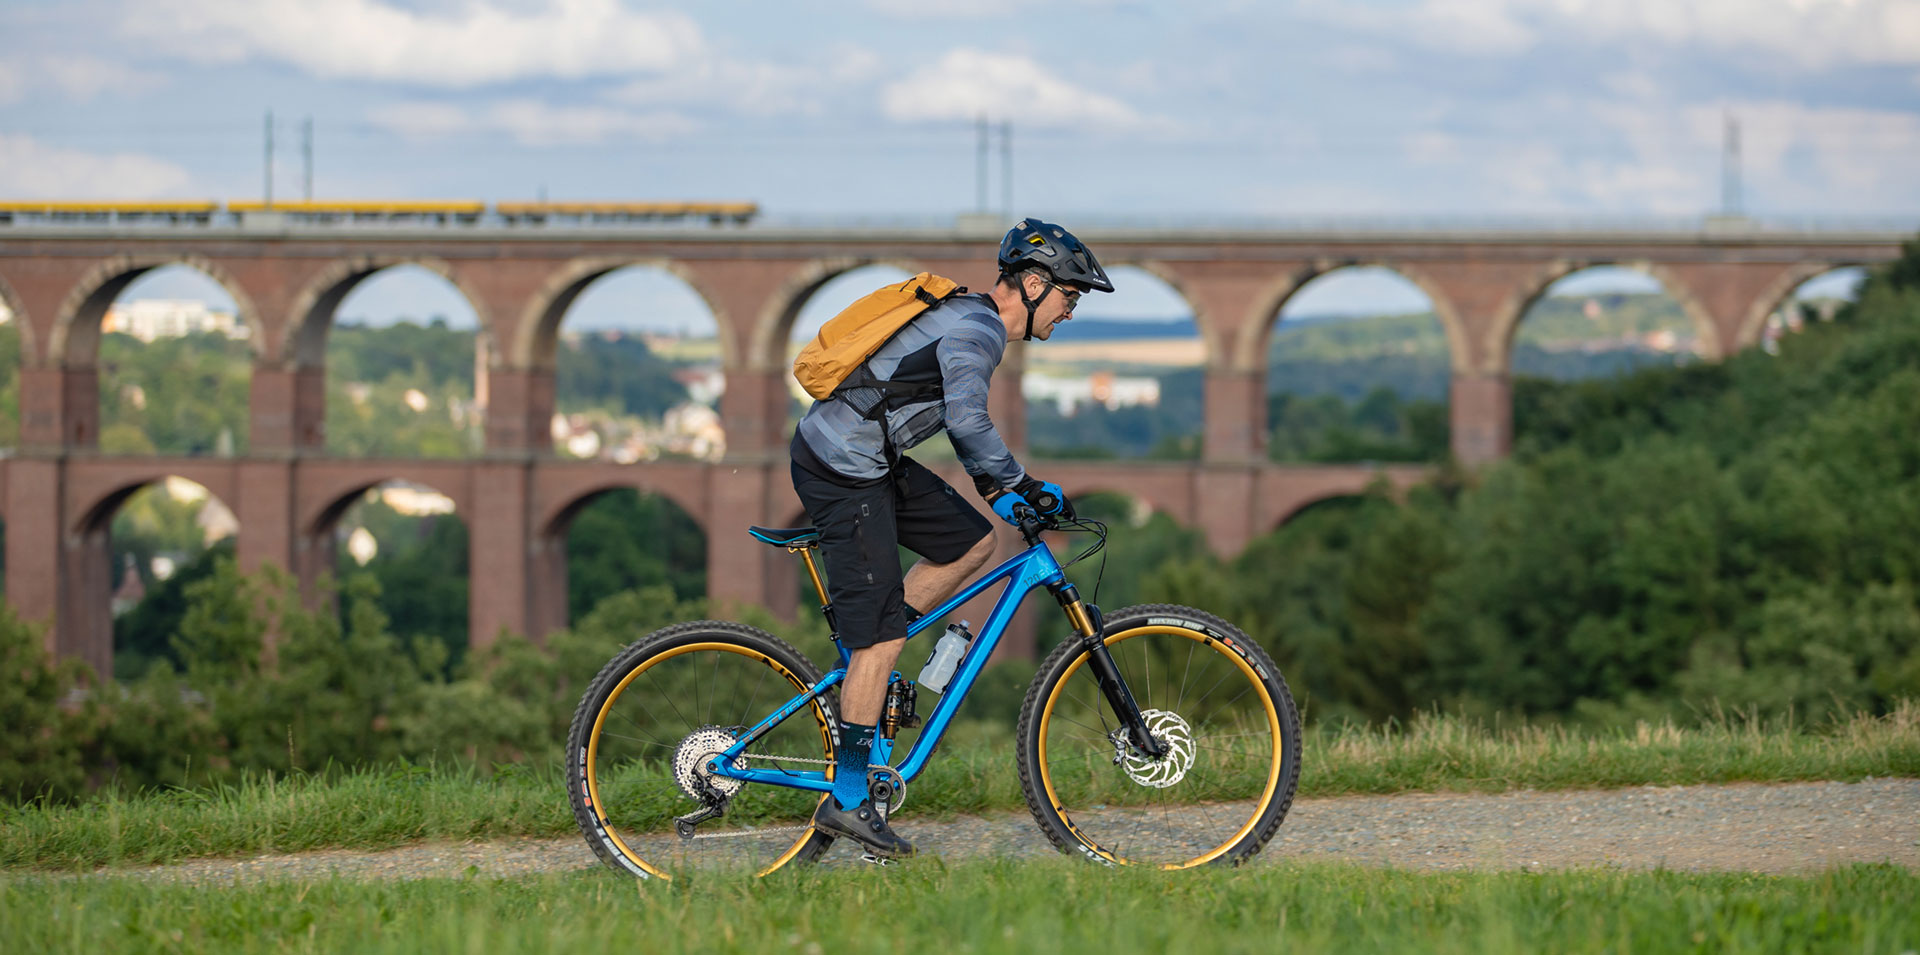 Ein Mountainbiker mit gelbem Rucksack fährt vor Landschaft stehend auf seinem Rad. Im Hintergrund ist groß ein Viadukt zu sehen.